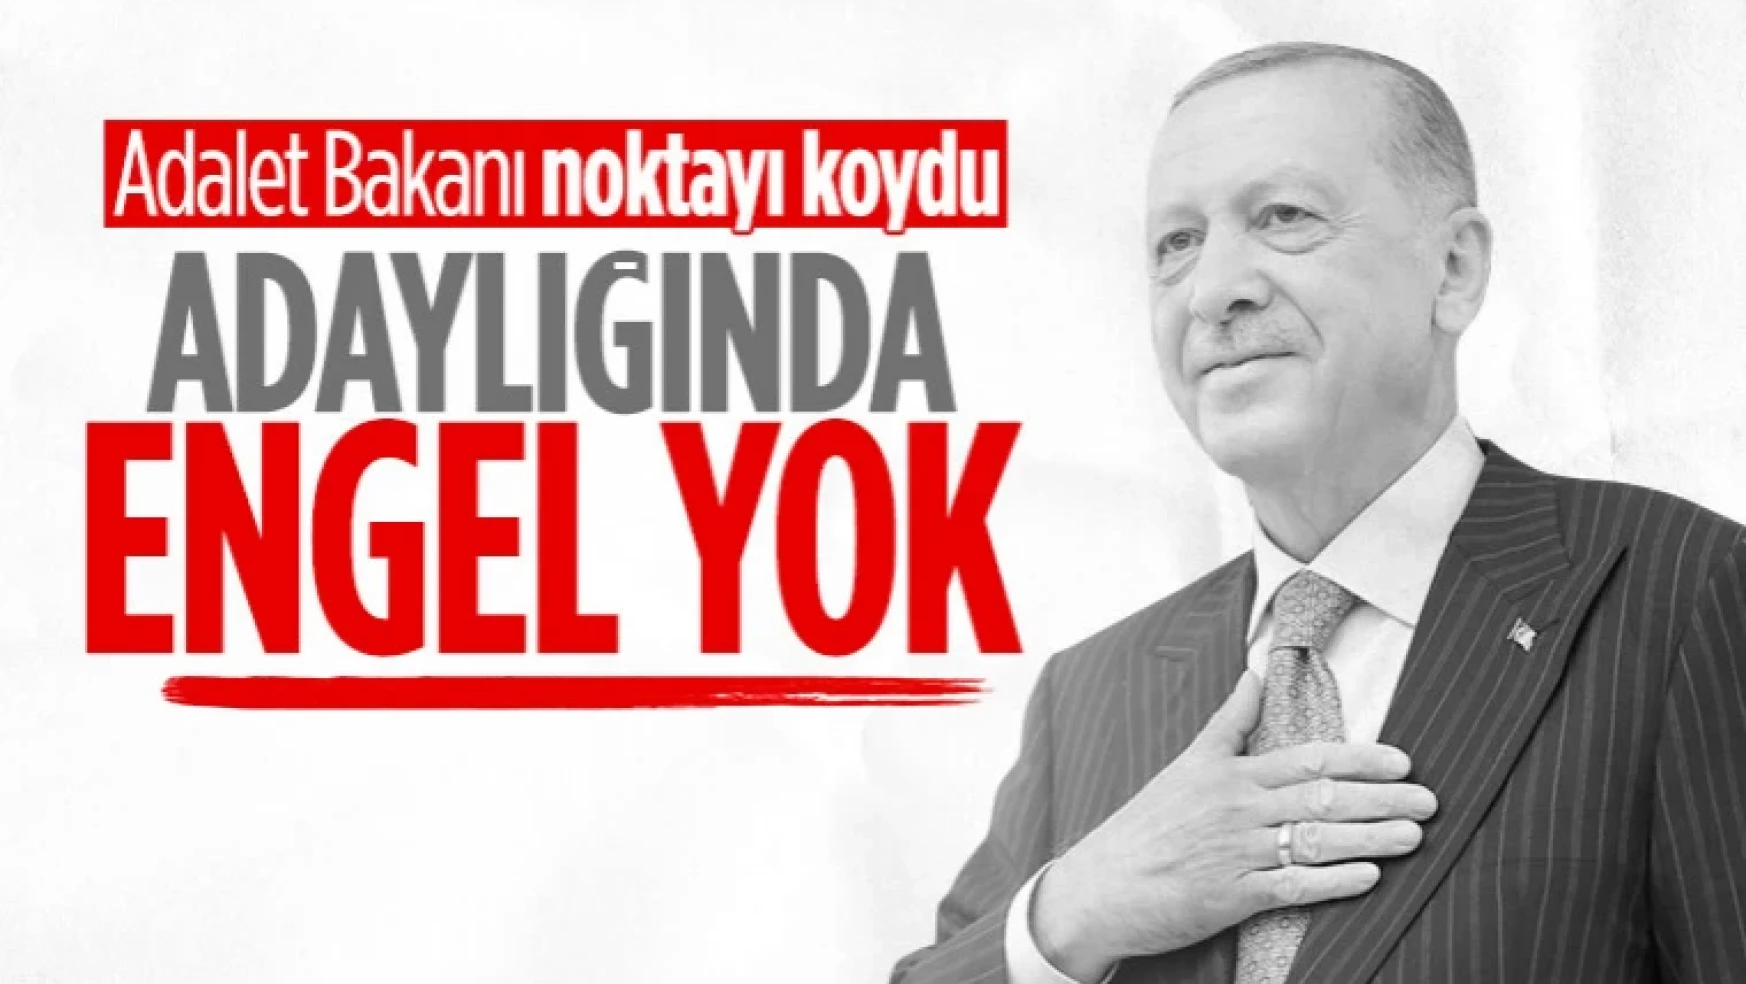 Cumhurbaşkanı Erdoğan'ın adaylığının önünde engel yok